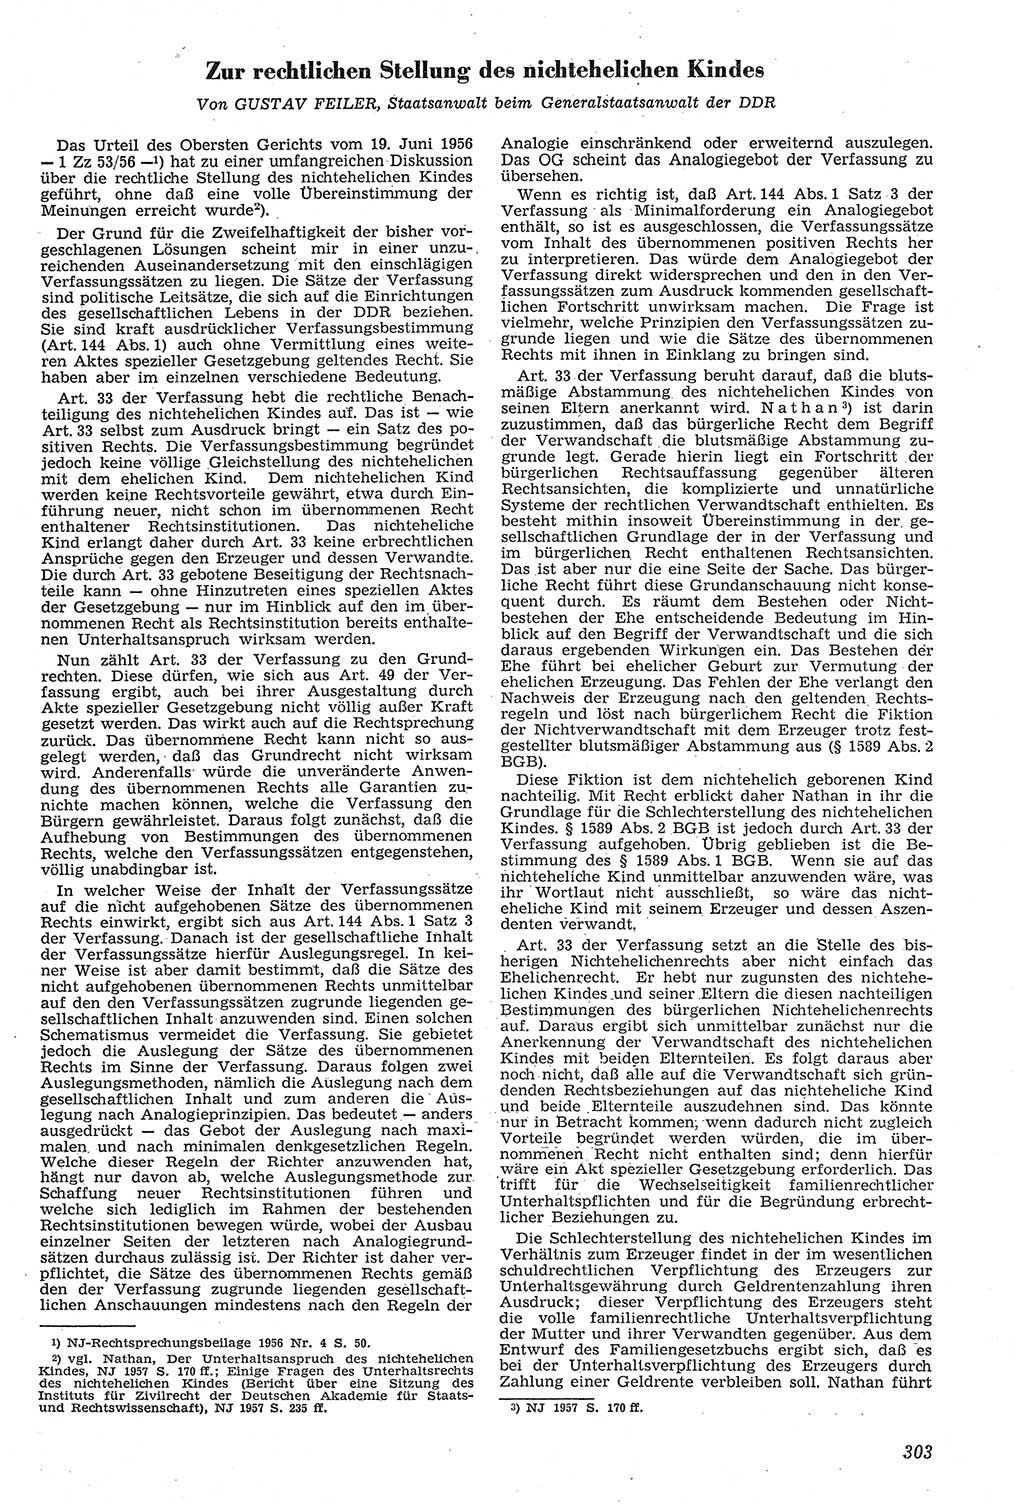 Neue Justiz (NJ), Zeitschrift für Recht und Rechtswissenschaft [Deutsche Demokratische Republik (DDR)], 11. Jahrgang 1957, Seite 303 (NJ DDR 1957, S. 303)